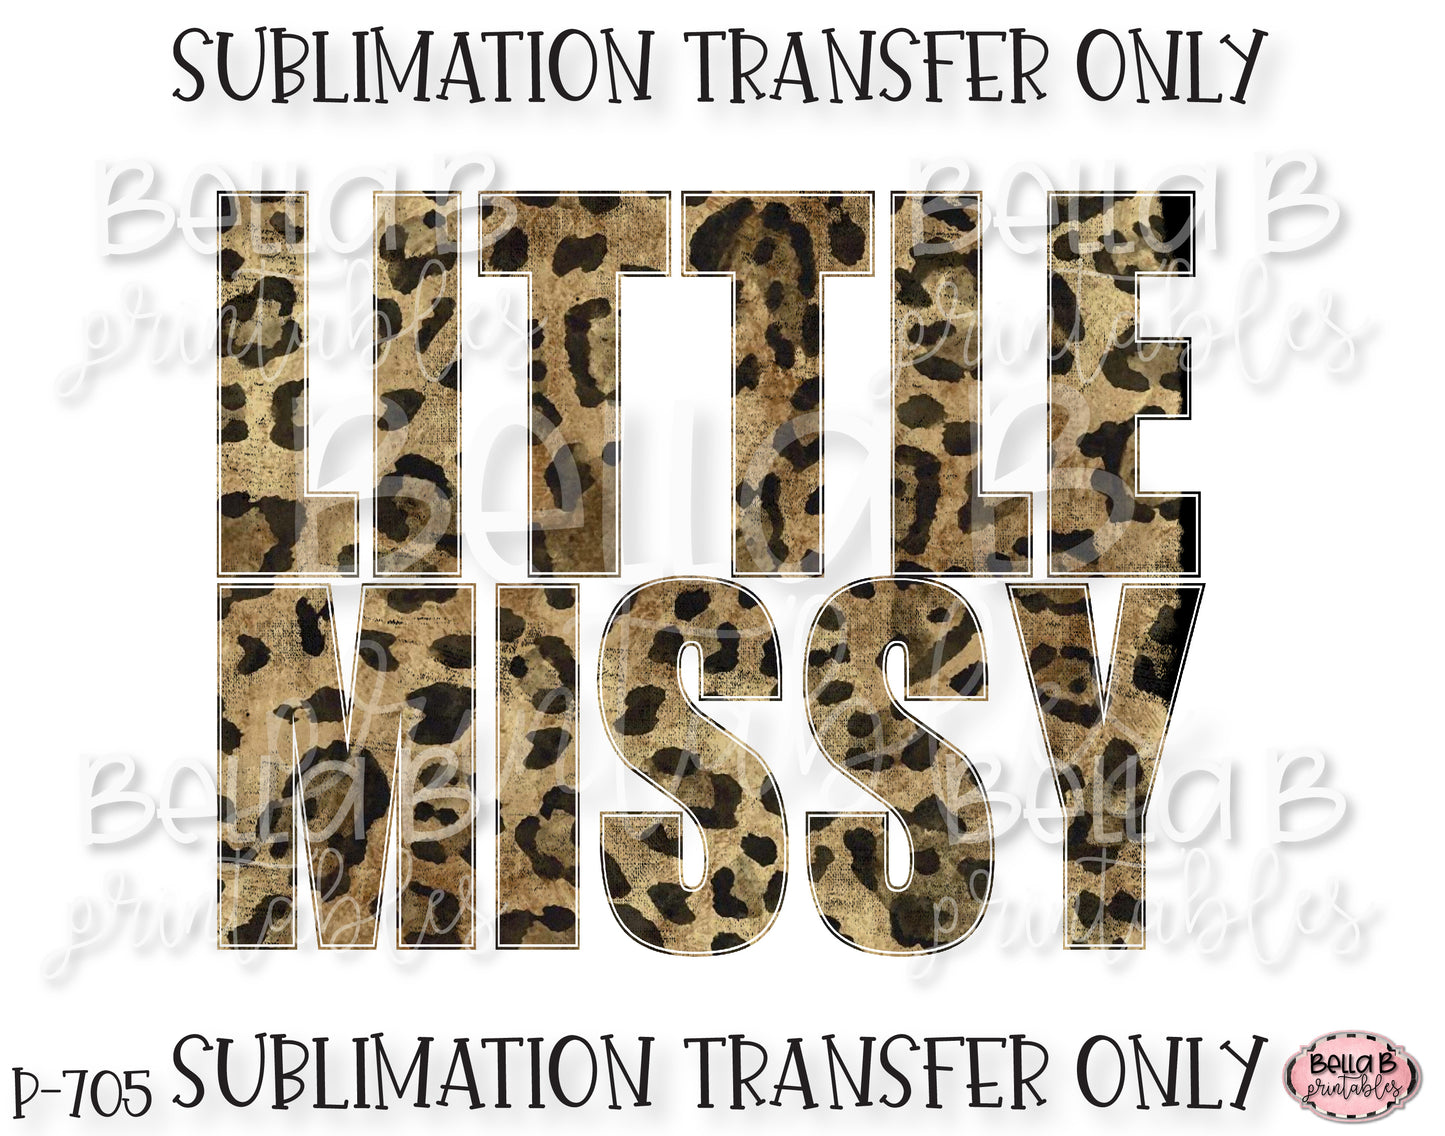 Leopard Print Little Missy Sublimation Transfer, Ready To Press, Heat Press Transfer, Sublimation Print